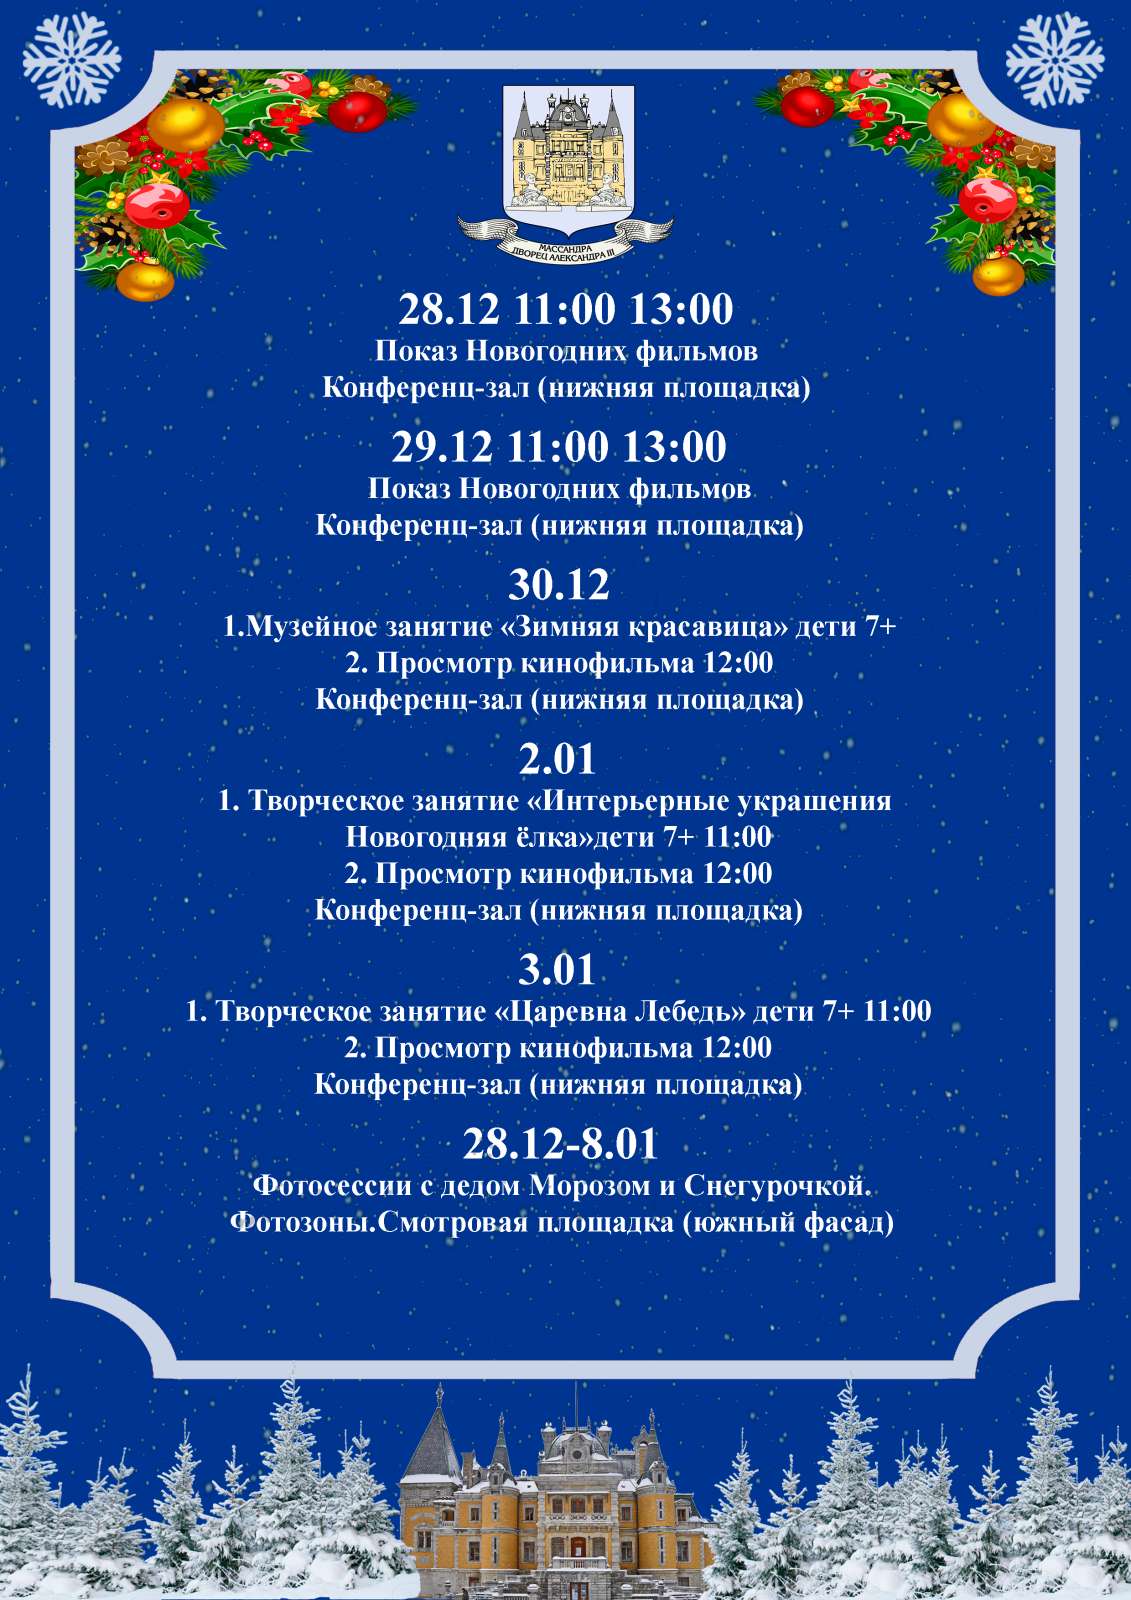 Подробнее о статье Программа новогодних мероприятий в Массандровском дворце